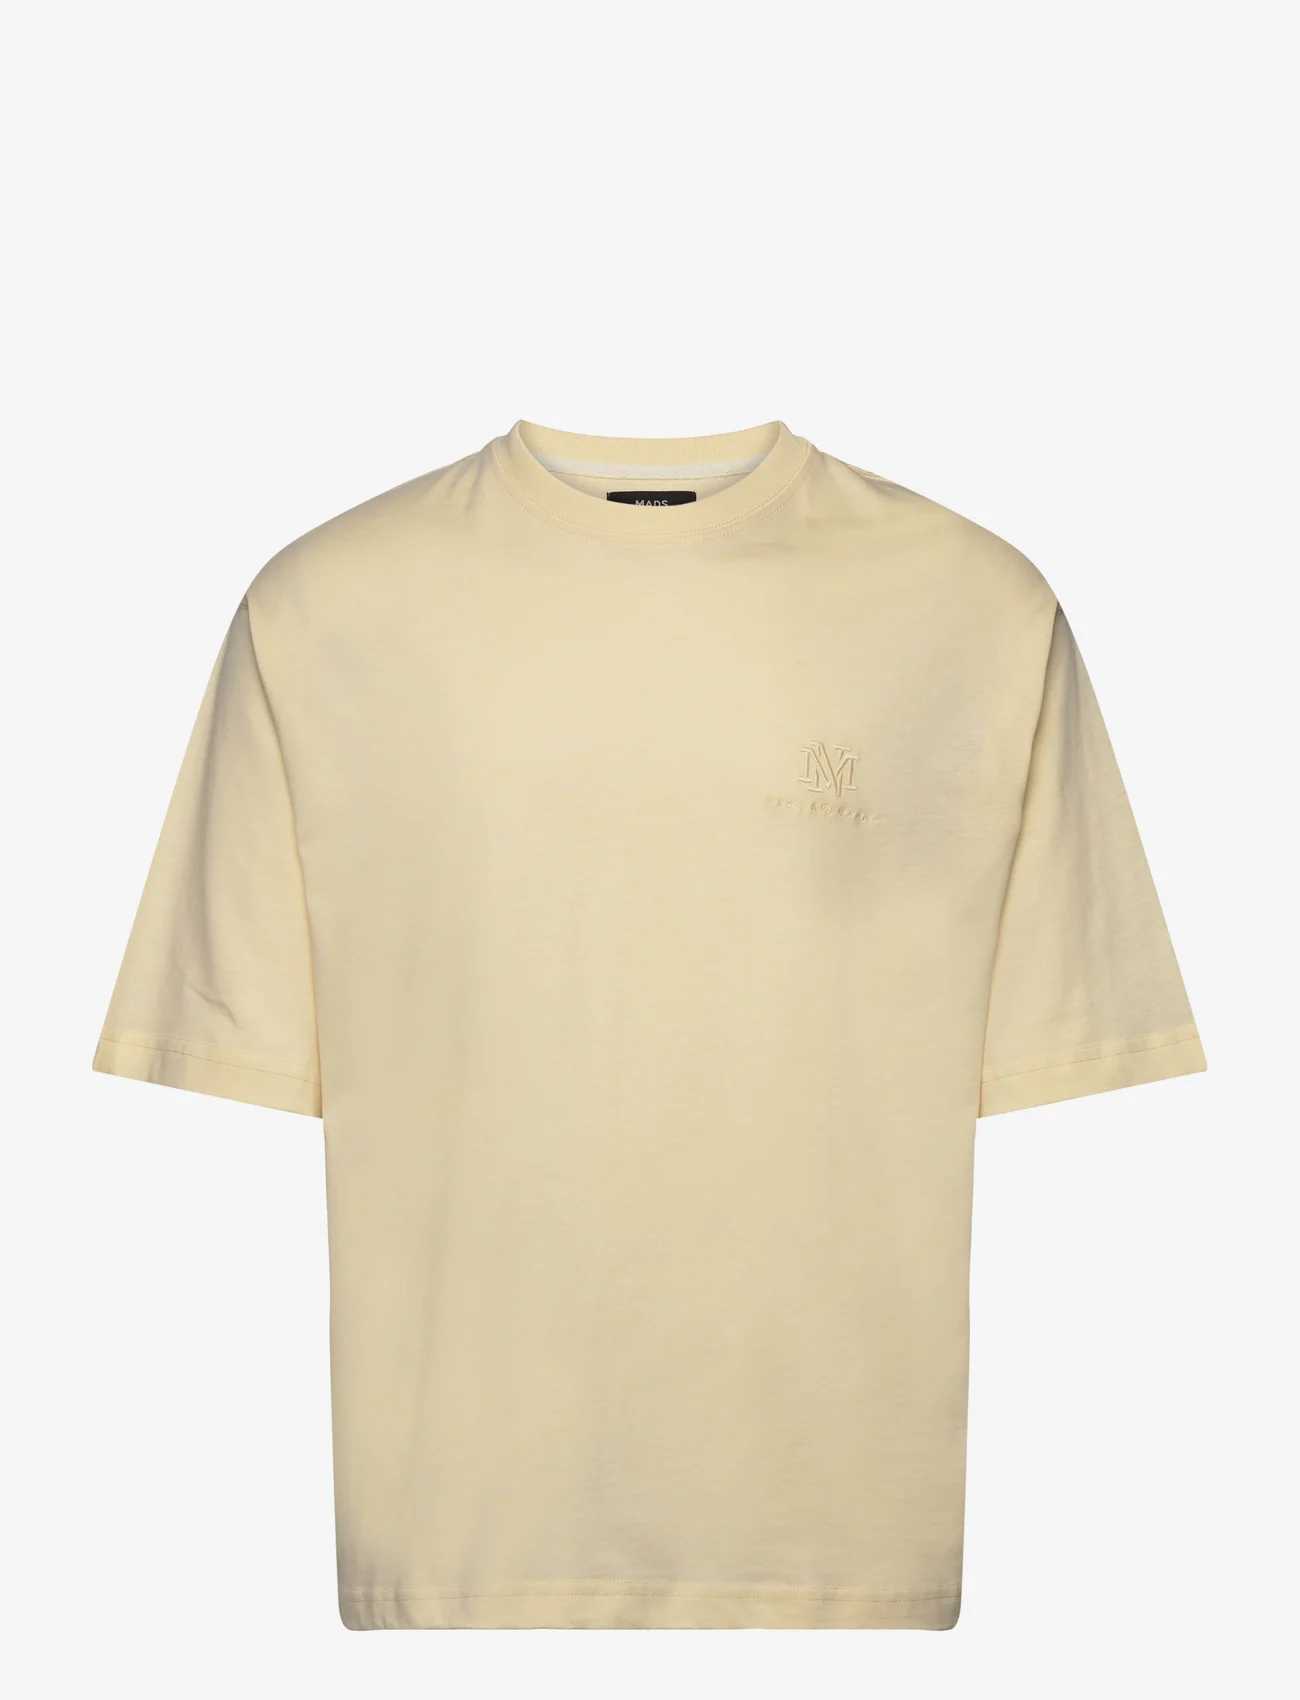 Mads Nørgaard - Heavy Dye Tony Tee - t-shirts - vanilla custard - 0